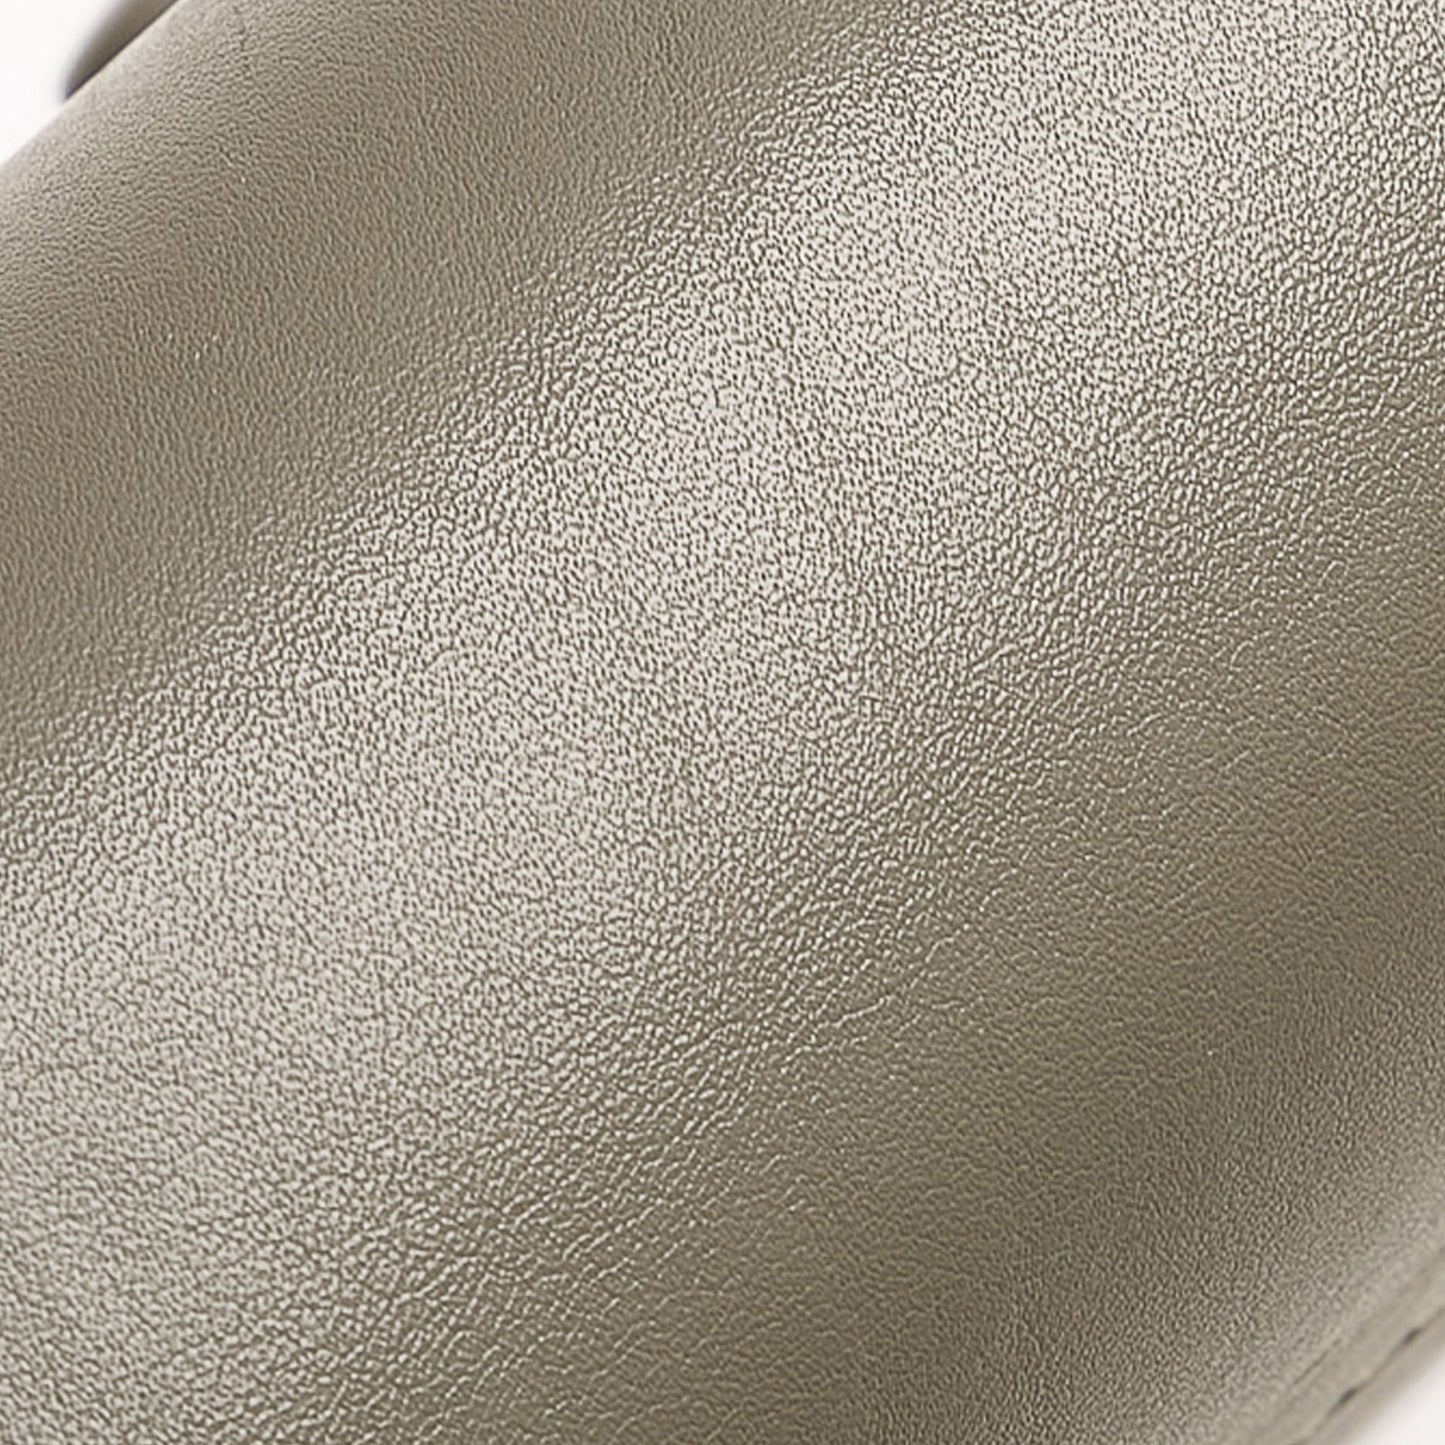 Tricolor Pocket Envelope Leather Shoulder Bag